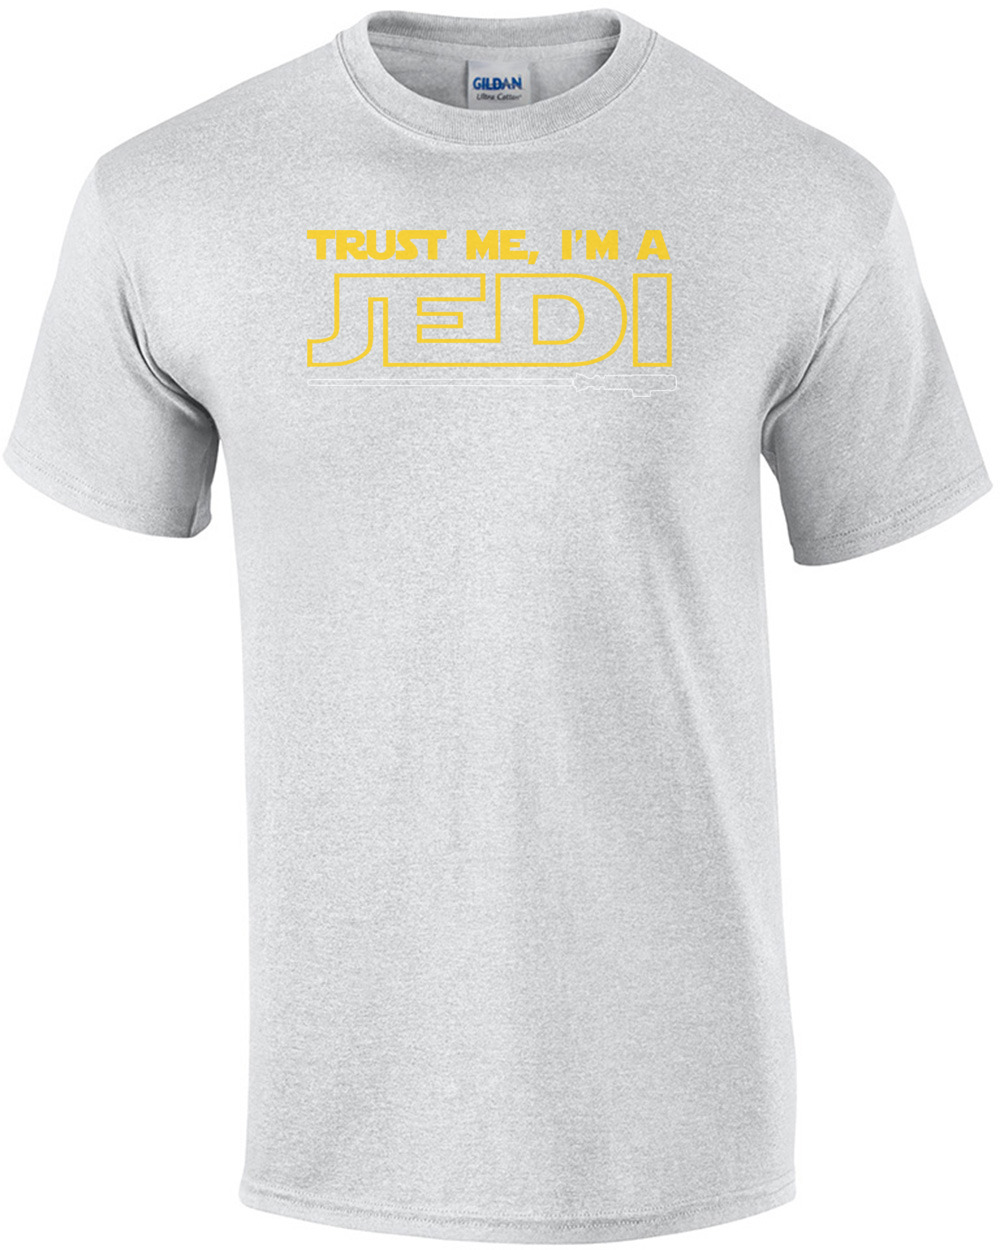 New TRUST ME IM A JEDI STAR WARS FUNNY TV Mens Black T-Shirt Size S-5XL